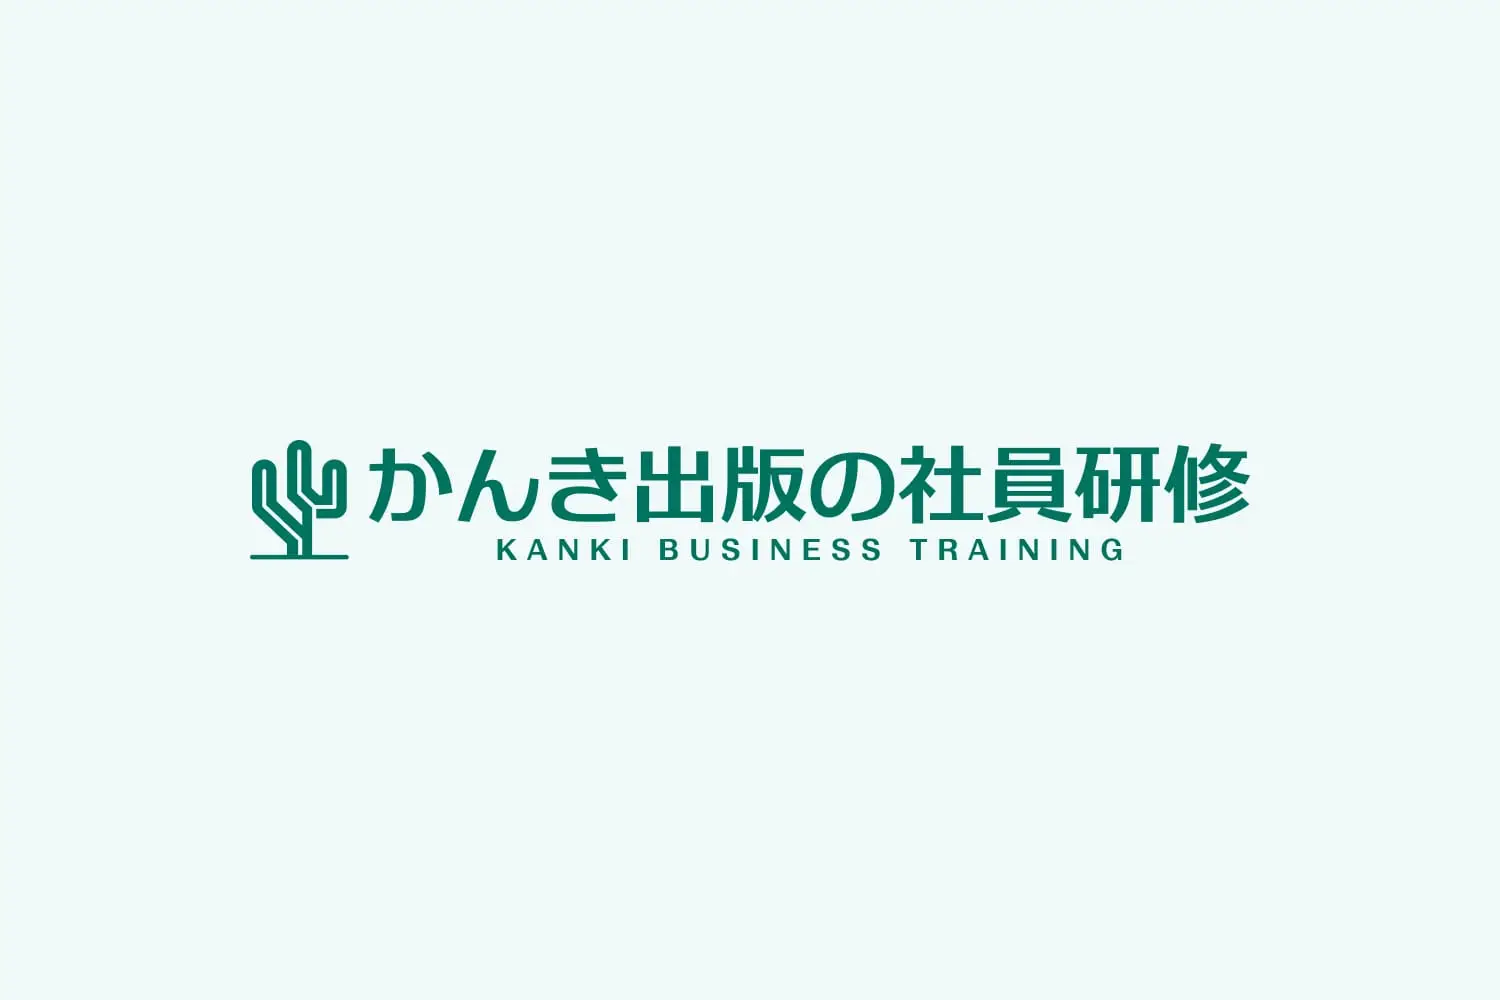 独立行政法人日本学生支援機構が発行する「ソーシャルボンド」への投資について